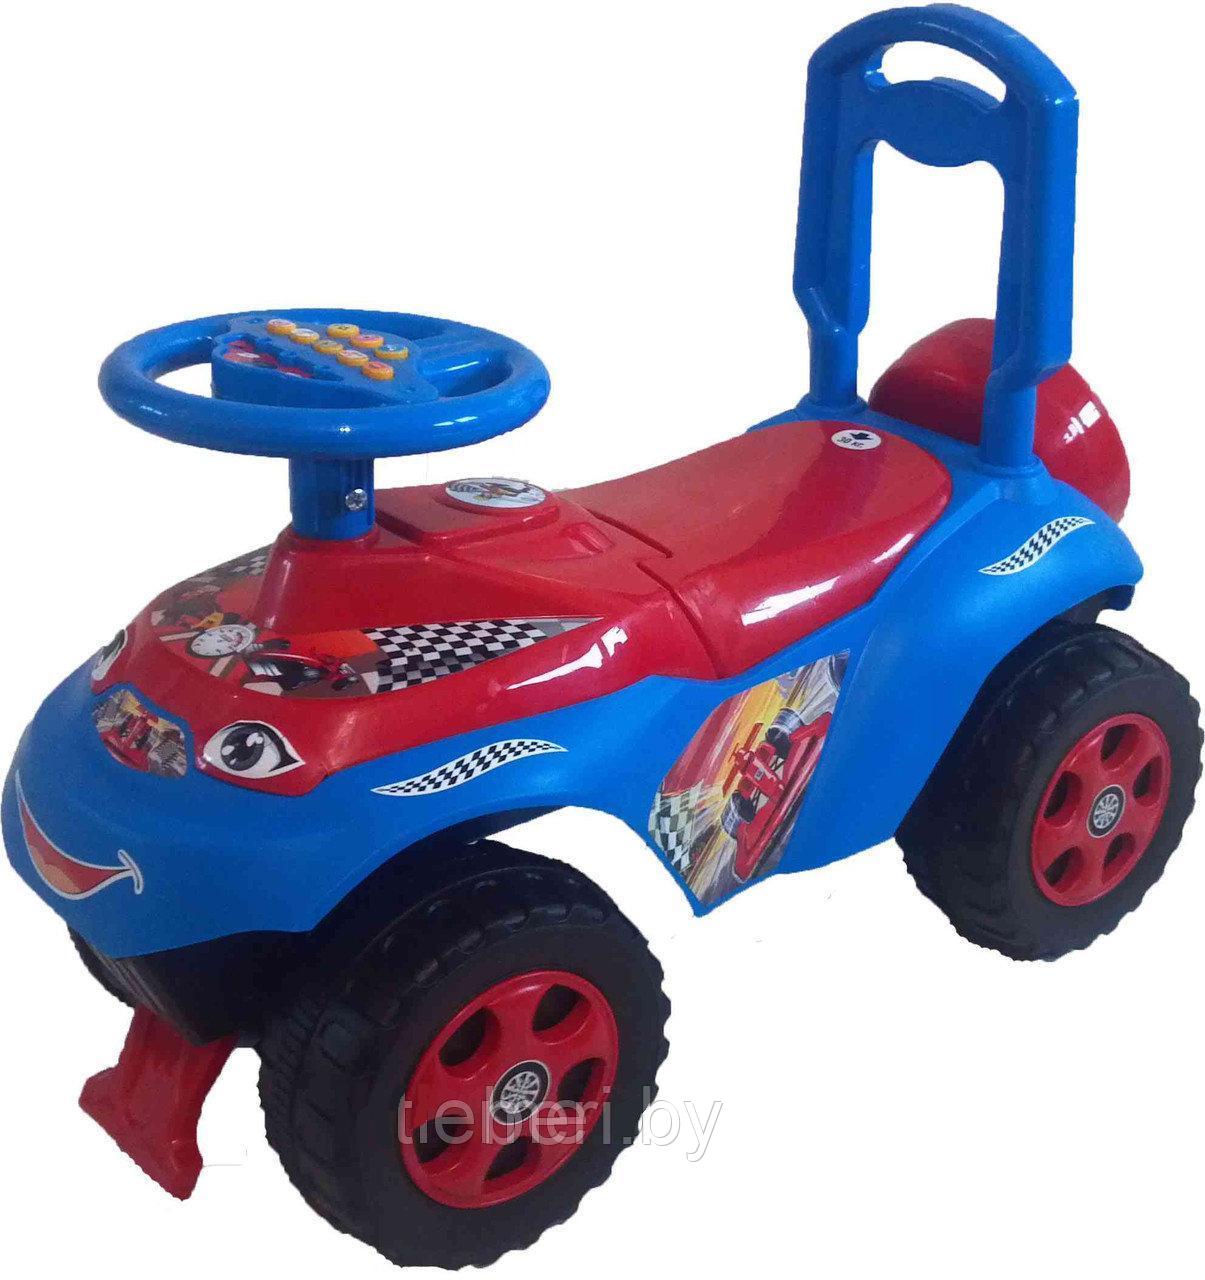 Машинка детская Автошка каталка, Чудомобиль Active Baby, музыкальная, багажник, 013117, синяя, фото 1